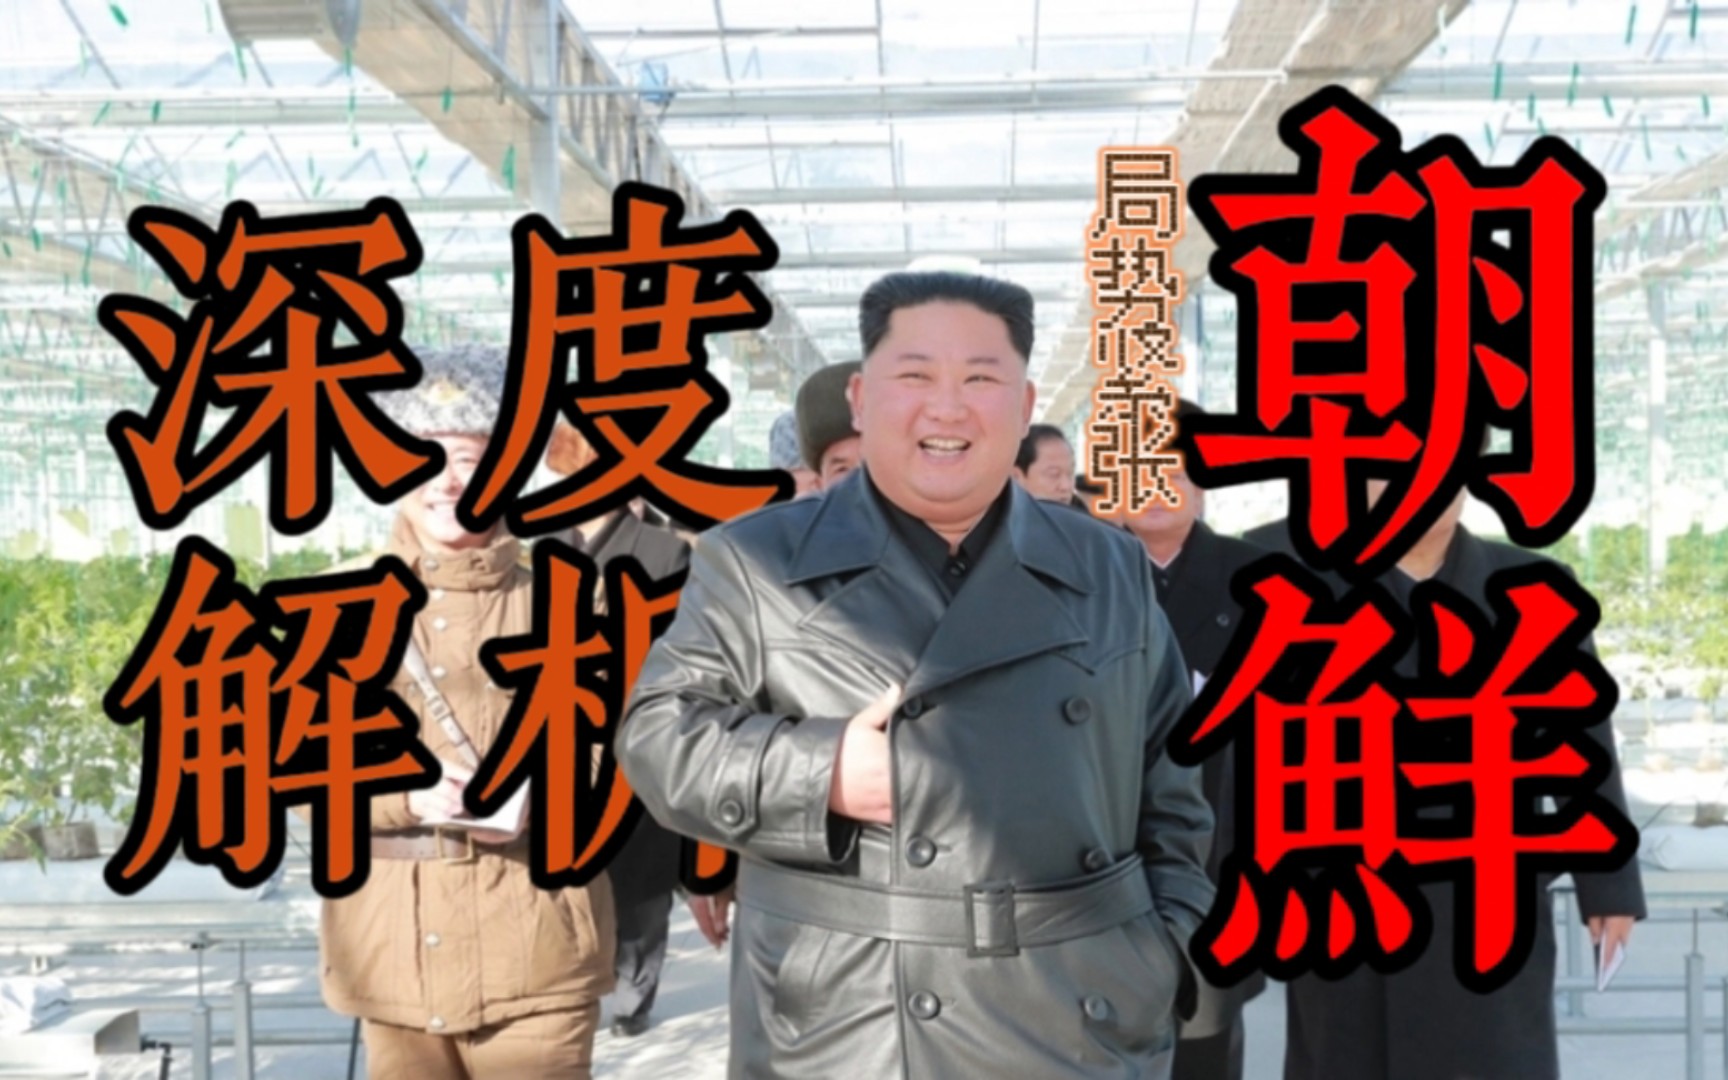 【科普】金正恩:朝鲜人民民主主义共和国万岁!深度解析朝鲜国家实力与人民生活。